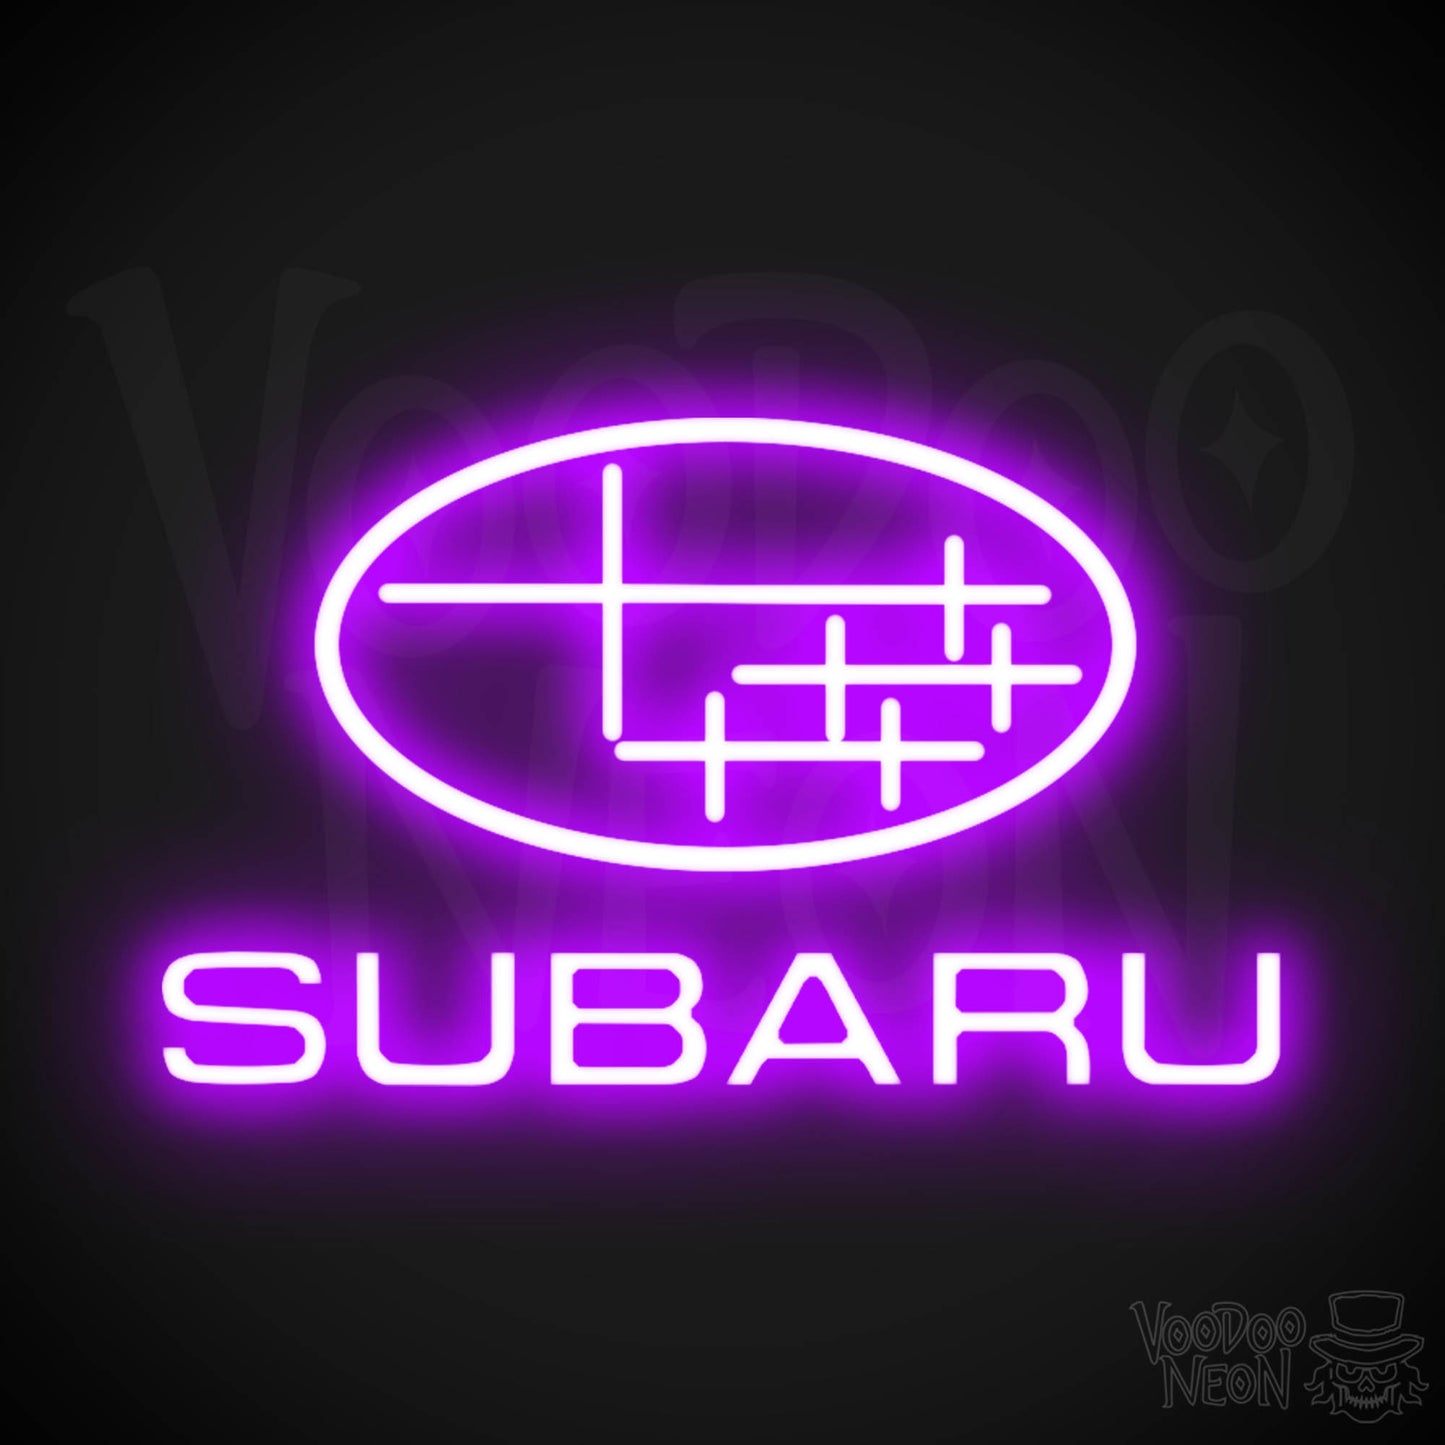 Subaru Neon Sign - Subaru Sign - Subaru Decor - Wall Art - Color Purple